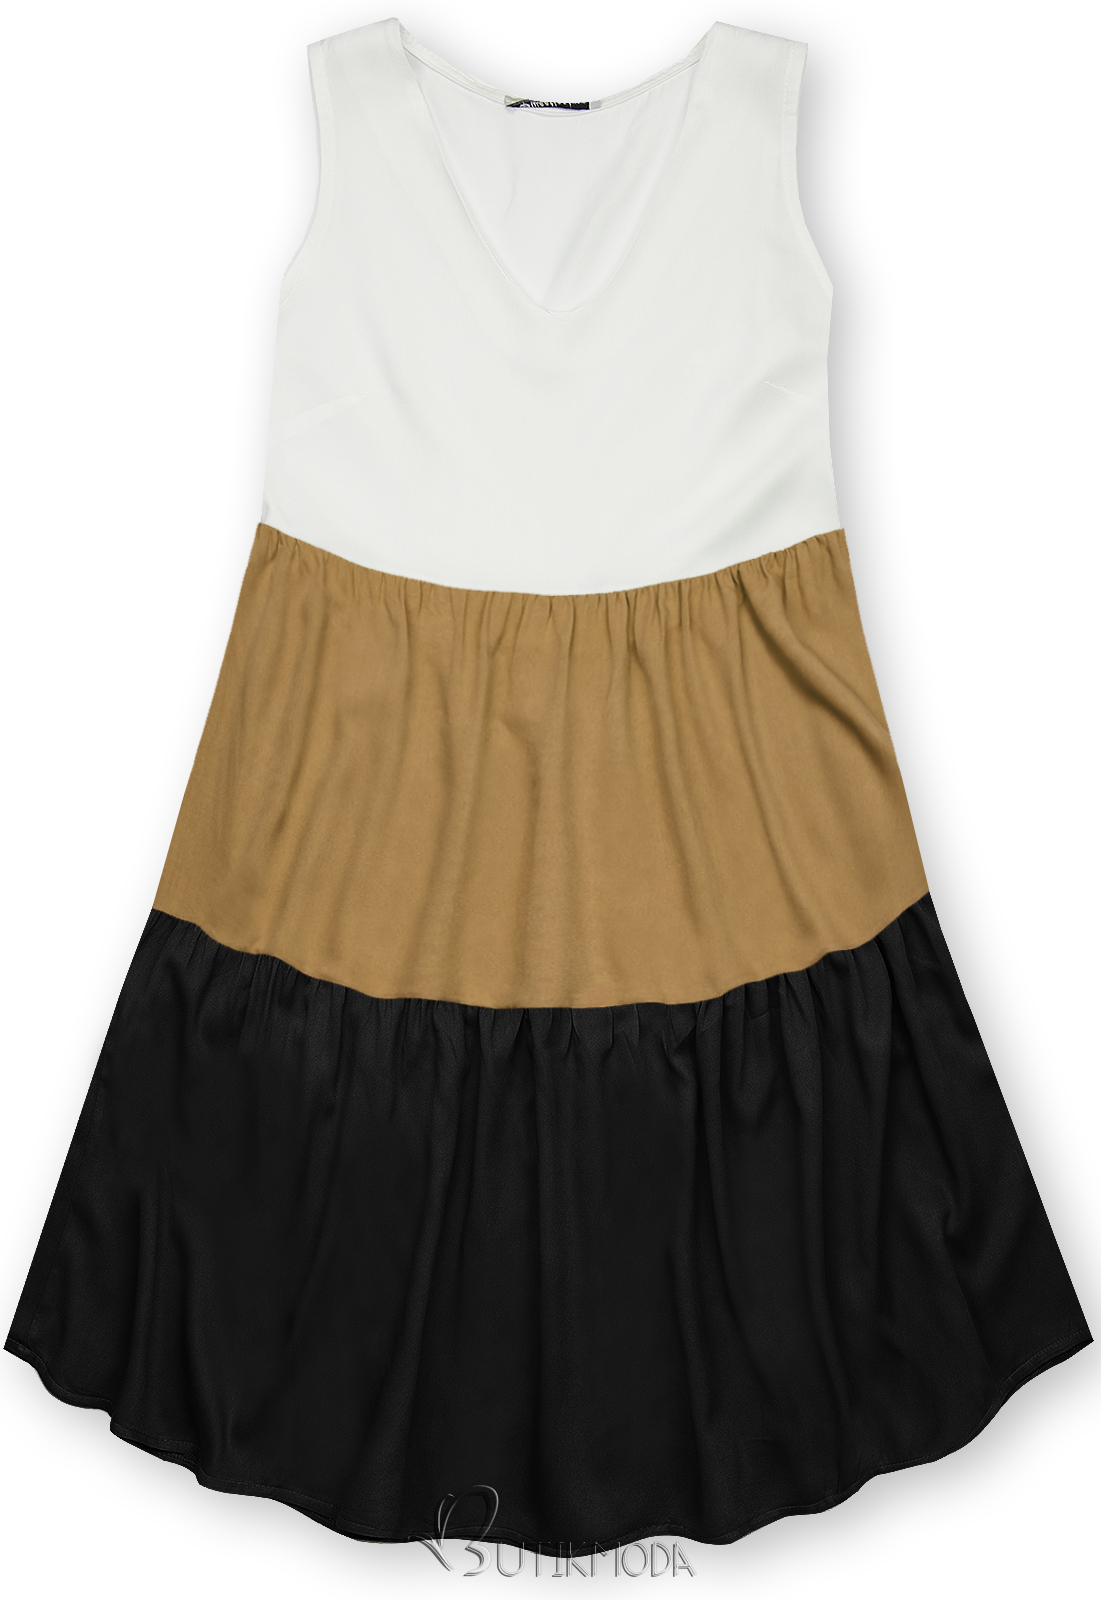 Fehér, barna és fekete színű nyári viszkóz ruha